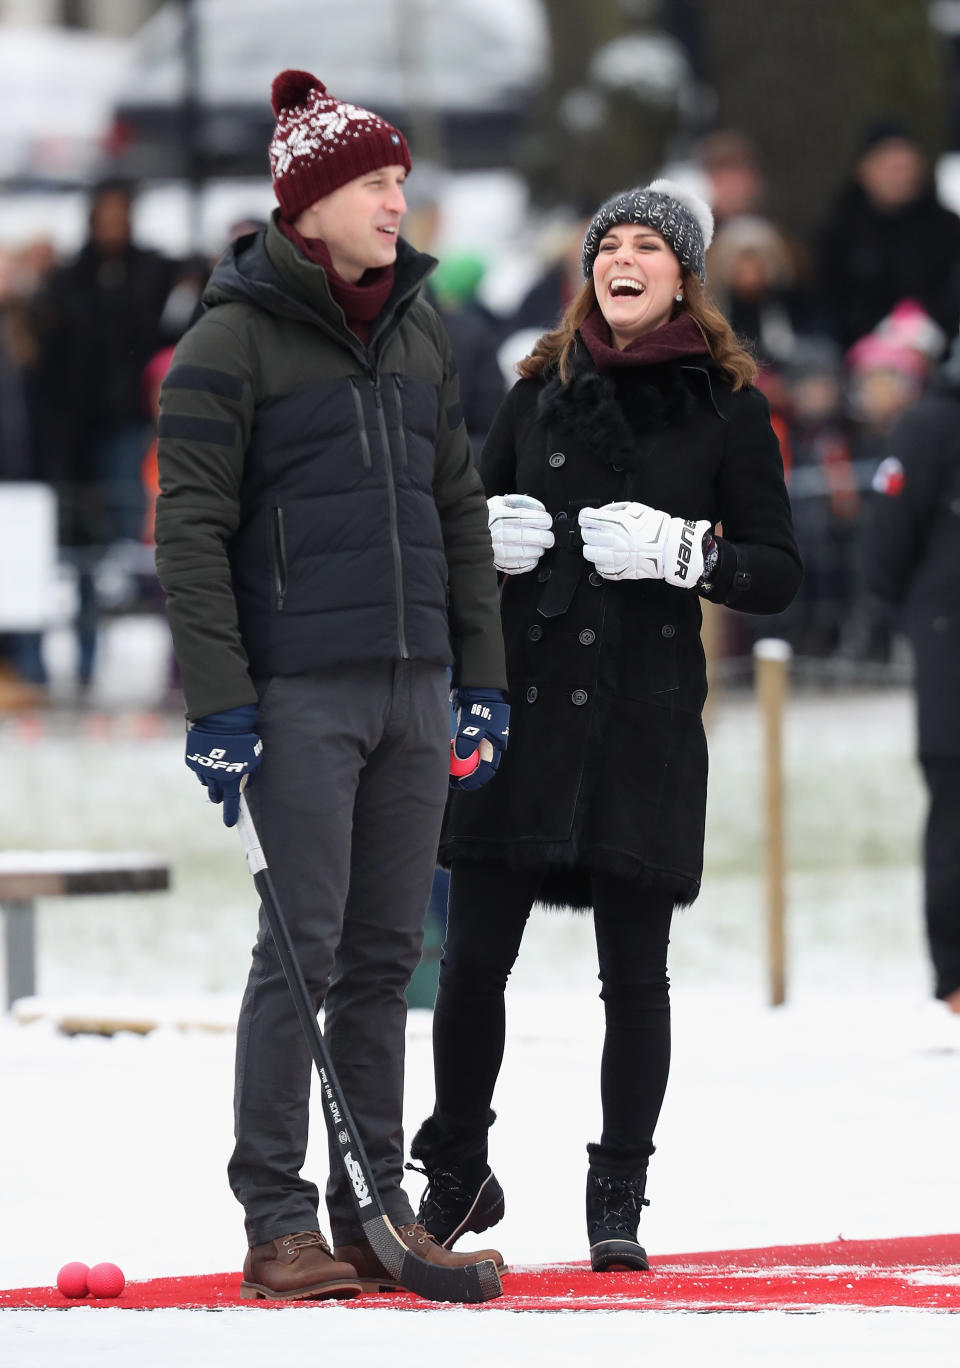 <p>Das Paar begann seinen vollgepackten Zeitplan in Stockholm mit einem Besuch im Vasaparken, einer Outdoor-Eislauffläche, wo sie eine ungewöhnliche Form von Hockey names Bandy kennenlernten. Das Duo schaute sich ein Spiel an, bevor sie selbst aufs Eis gingen und sich an dem Spiel versuchten. Die schwangere Kate stand vorsichtshalber auf einem Teppich und ging nicht direkt aufs Eis. <em>[Bild: Getty]</em> </p>